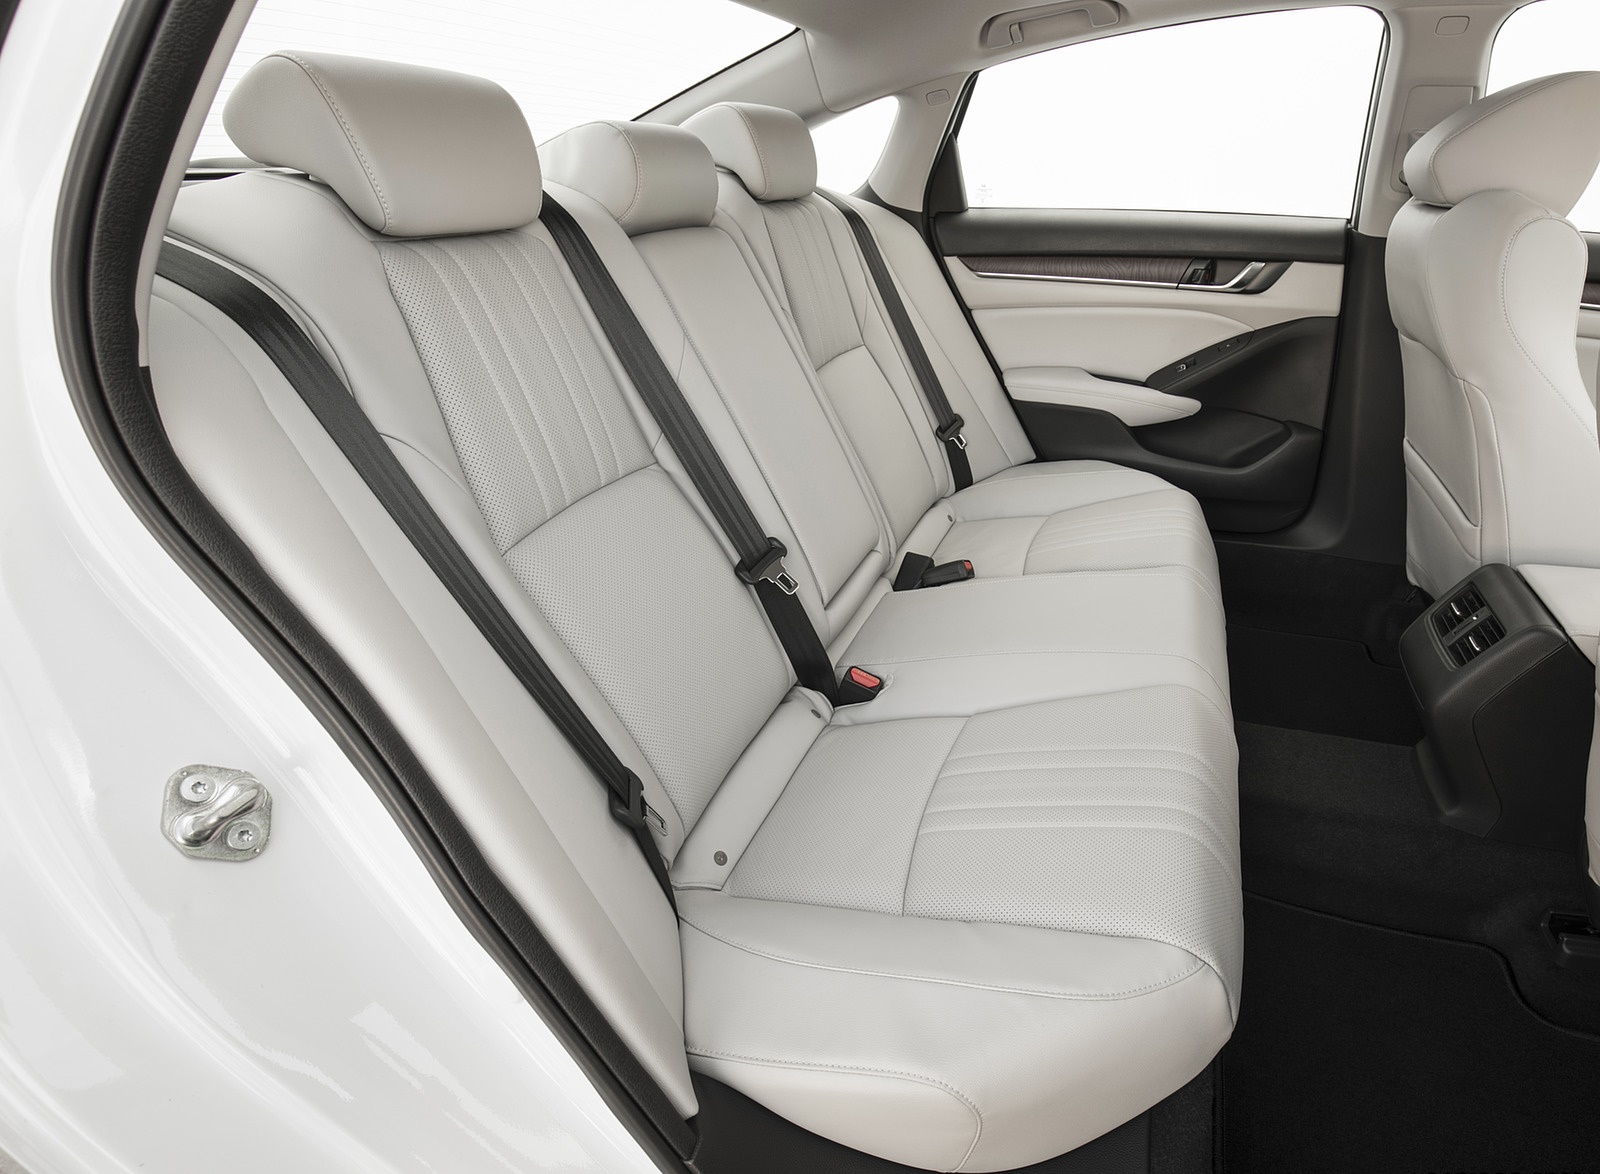 2018 Honda Accord Touring Interior Rear Seats Wallpapers #104 of 107